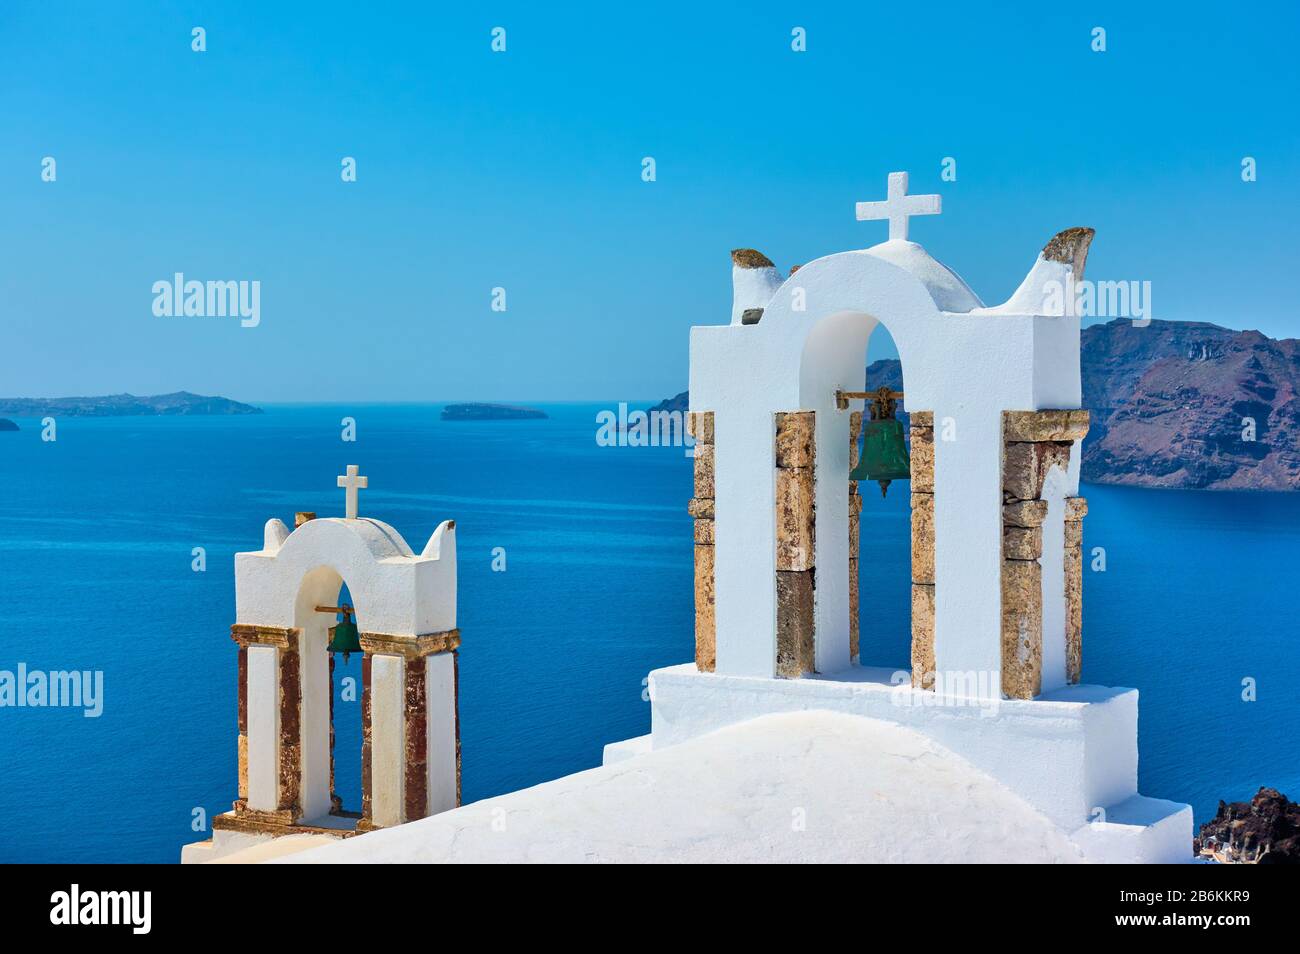 Clocher de l'église orthodoxe grecque au-dessus de la mer sur l'île de Santorin, Grèce Banque D'Images